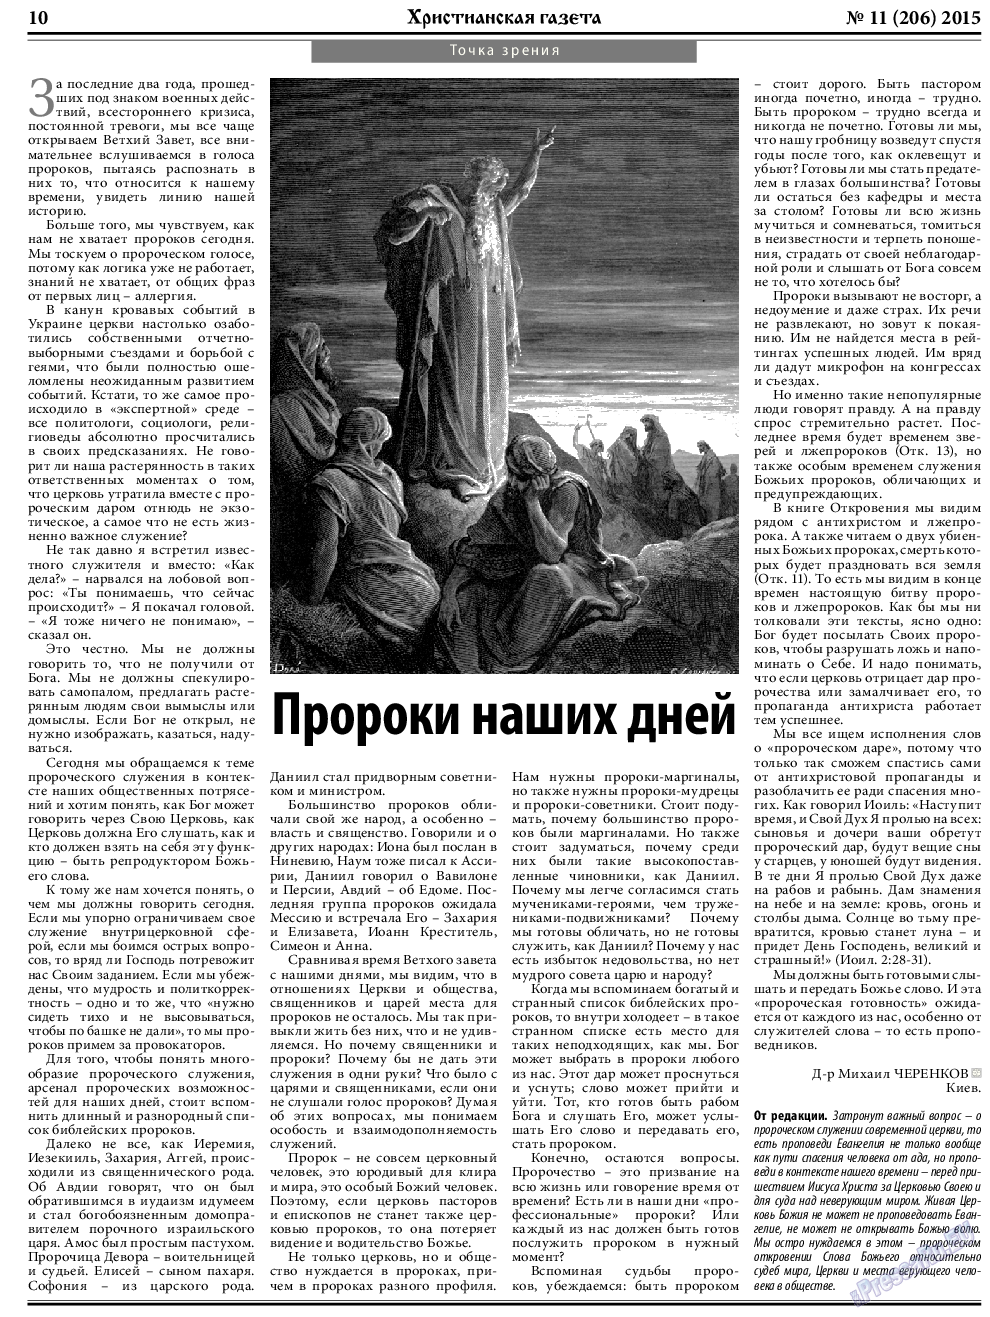 Христианская газета, газета. 2015 №11 стр.10